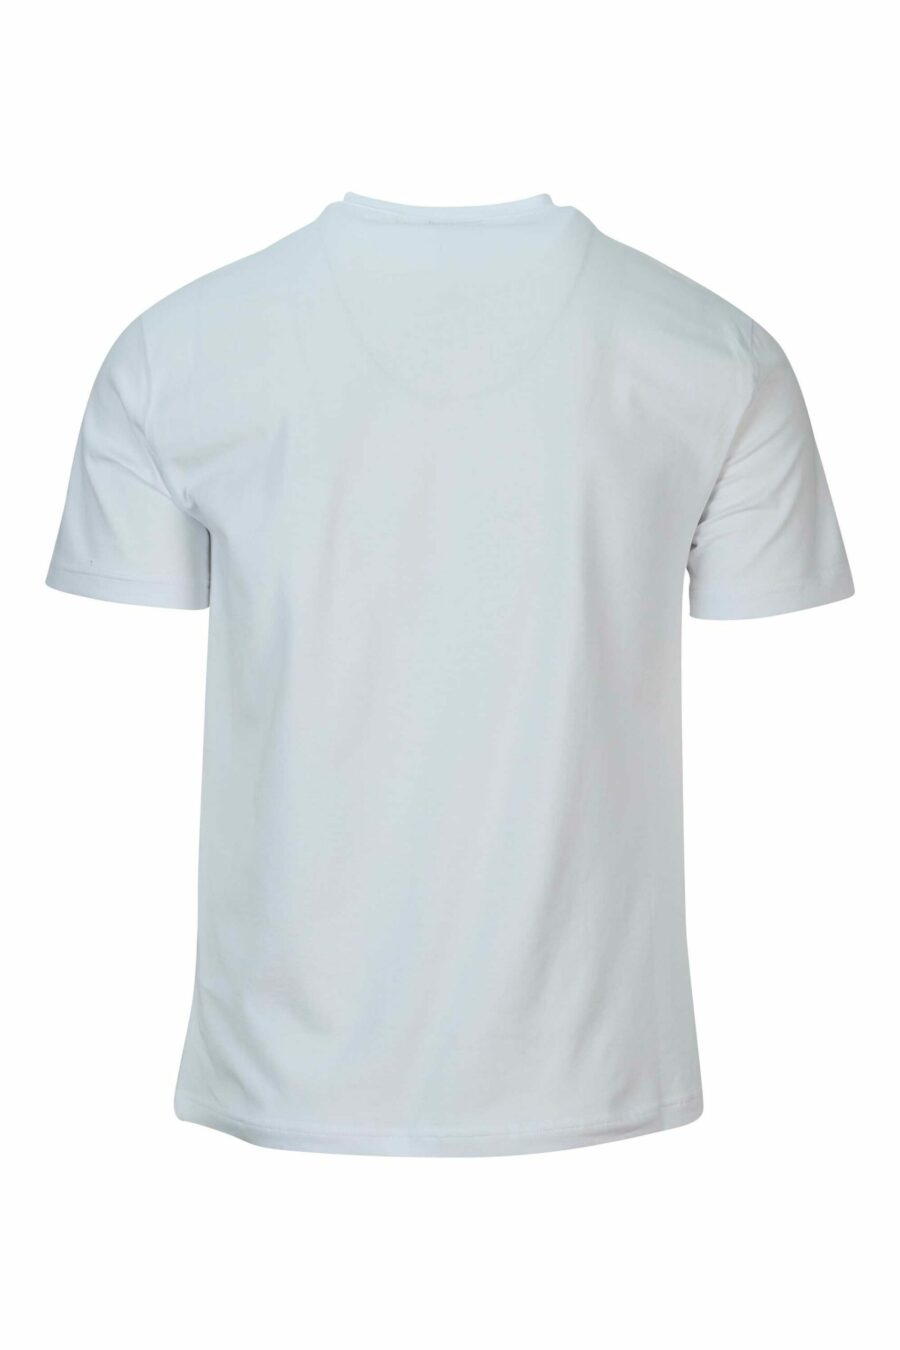 Weißes T-Shirt mit neon-silbernem "lux identity" Maxilogo - 8057970672319 1 skaliert